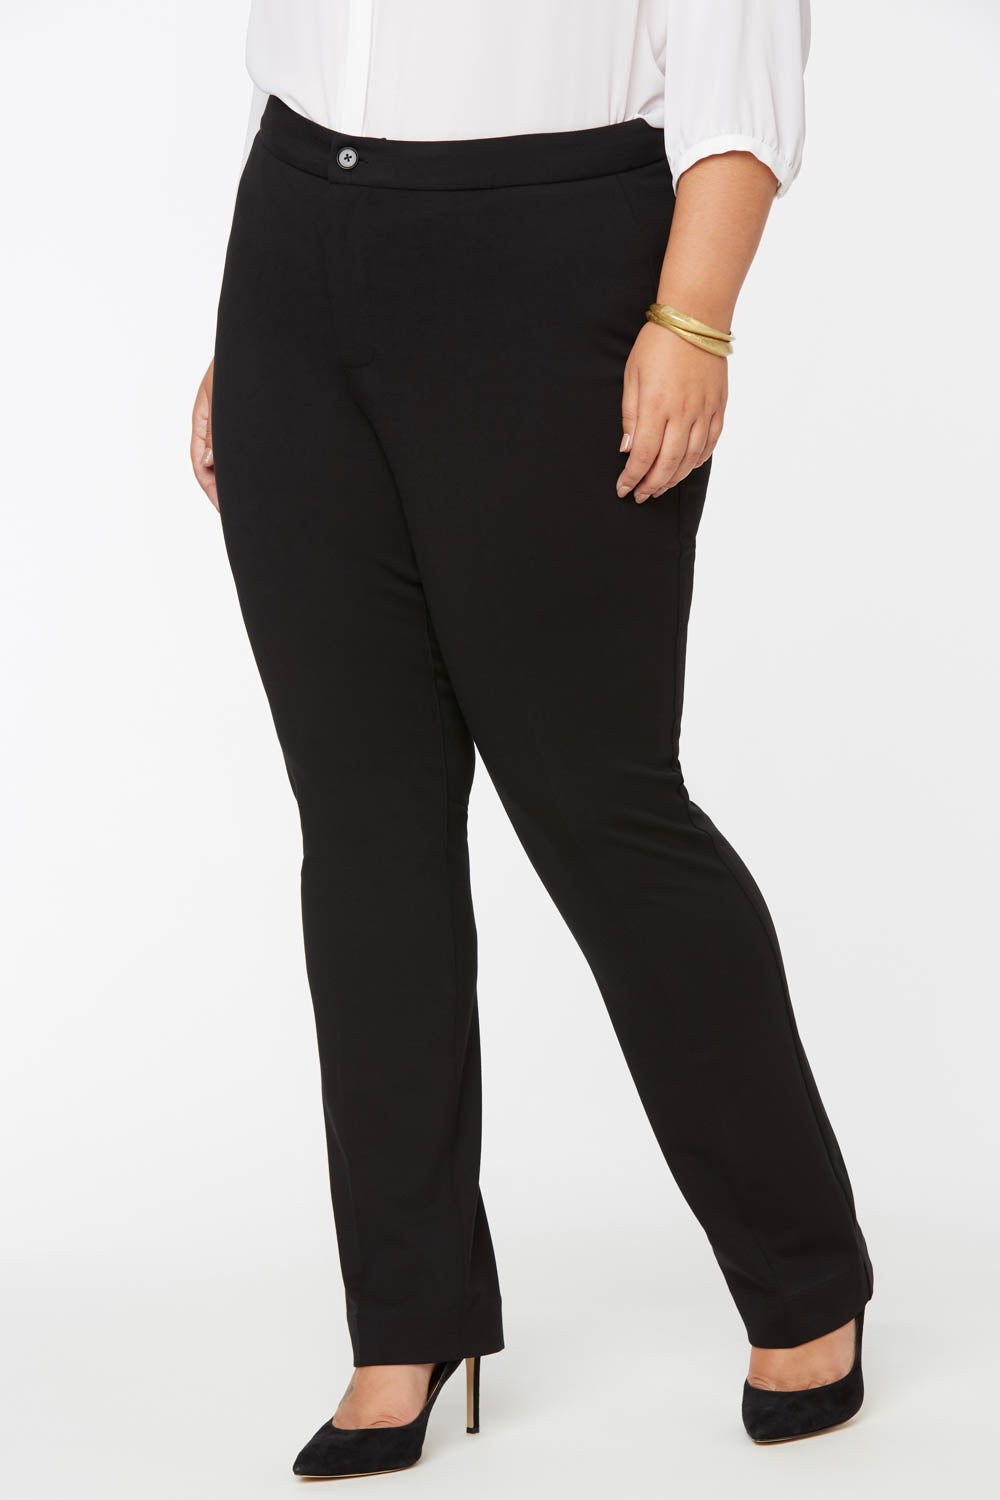 NYDJ Slim Trouser Pants In Curves 360 Ponte Knit - Black